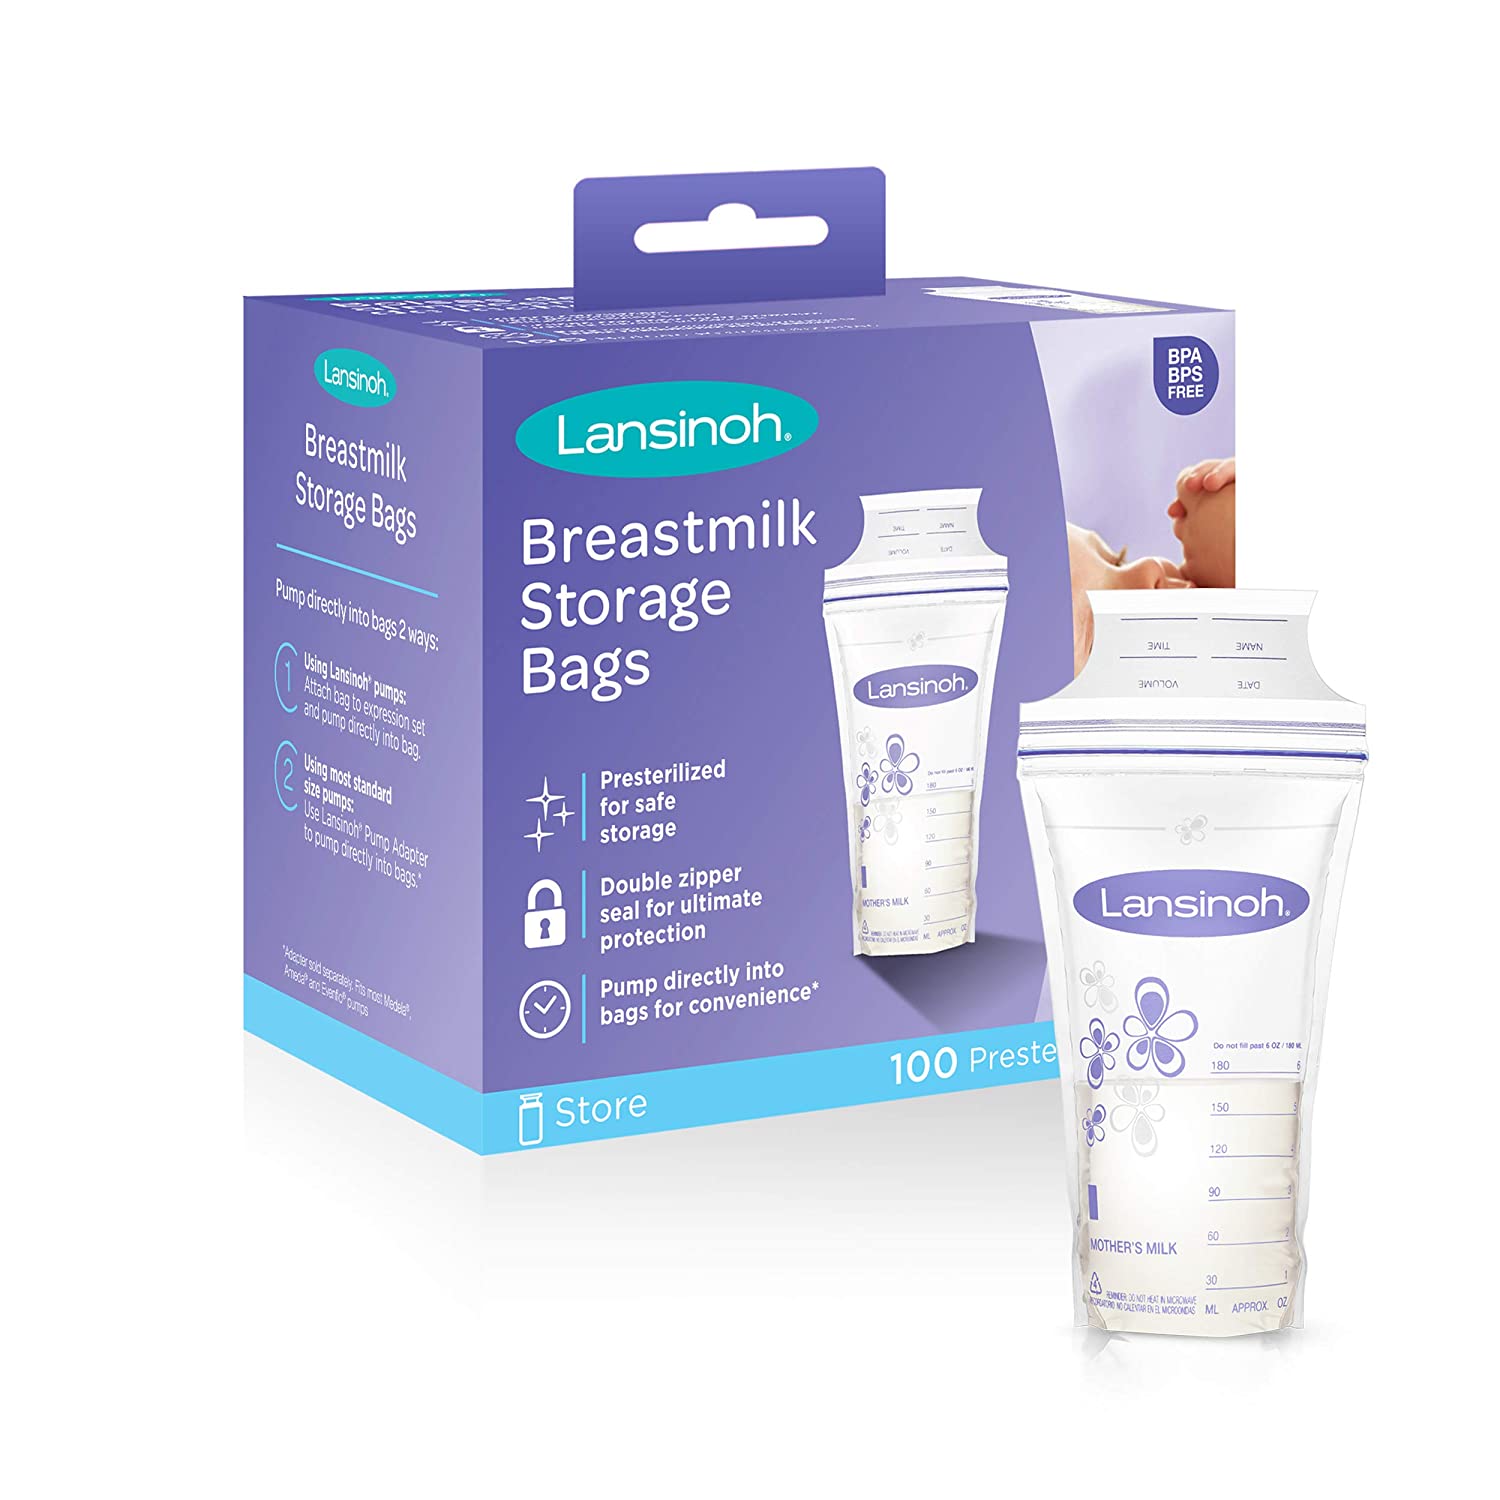 Lansinoh Best Breastmilk Storage Bags